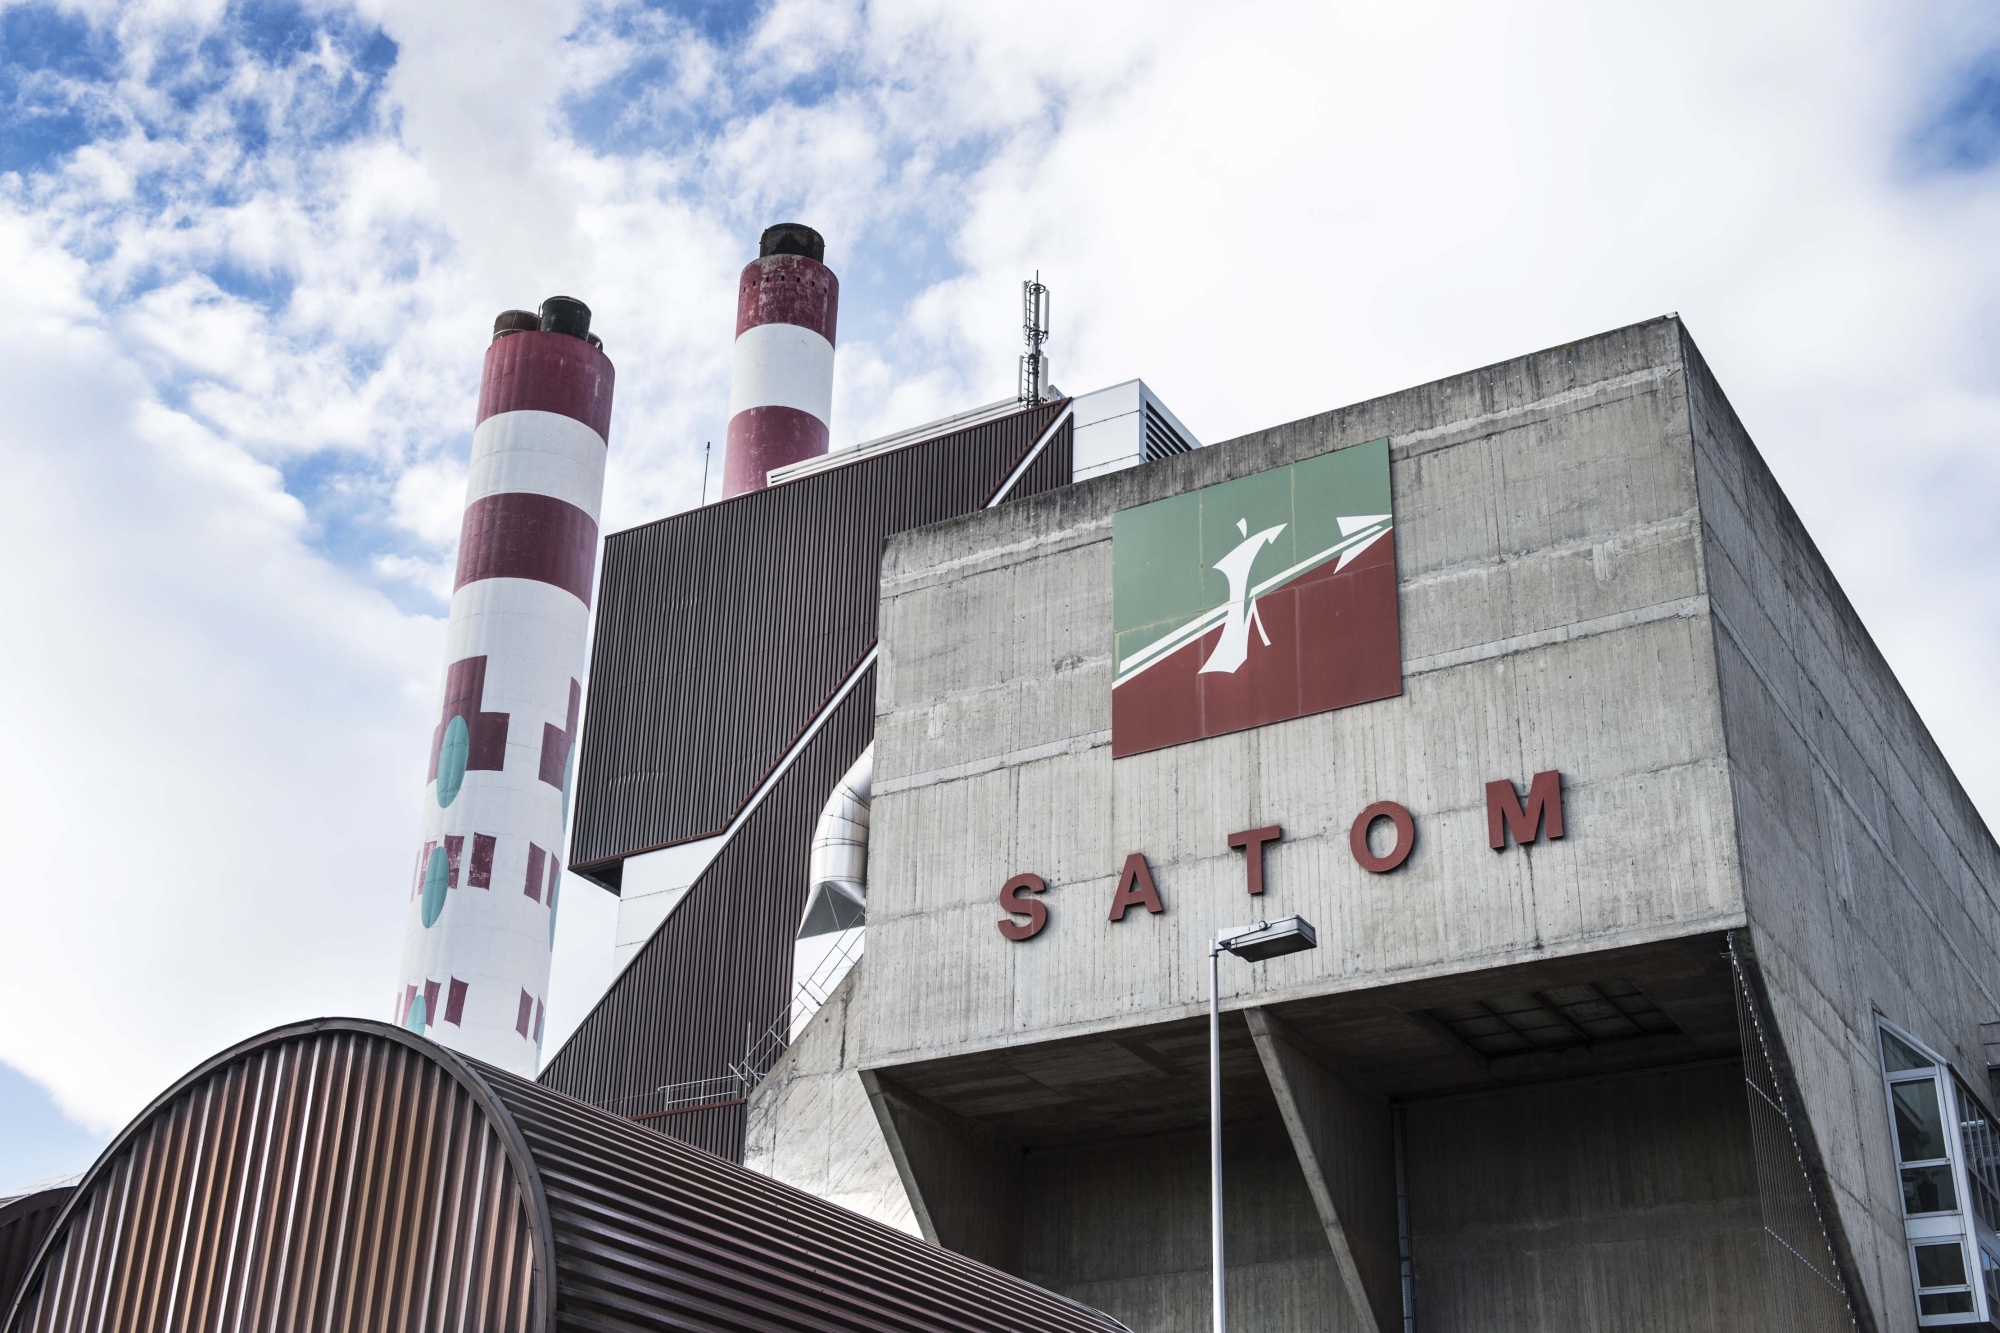 L'usine d'incinération Satom et son thermoréseau chauffe déjà des bâtiments sur plusieurs kilomètres.